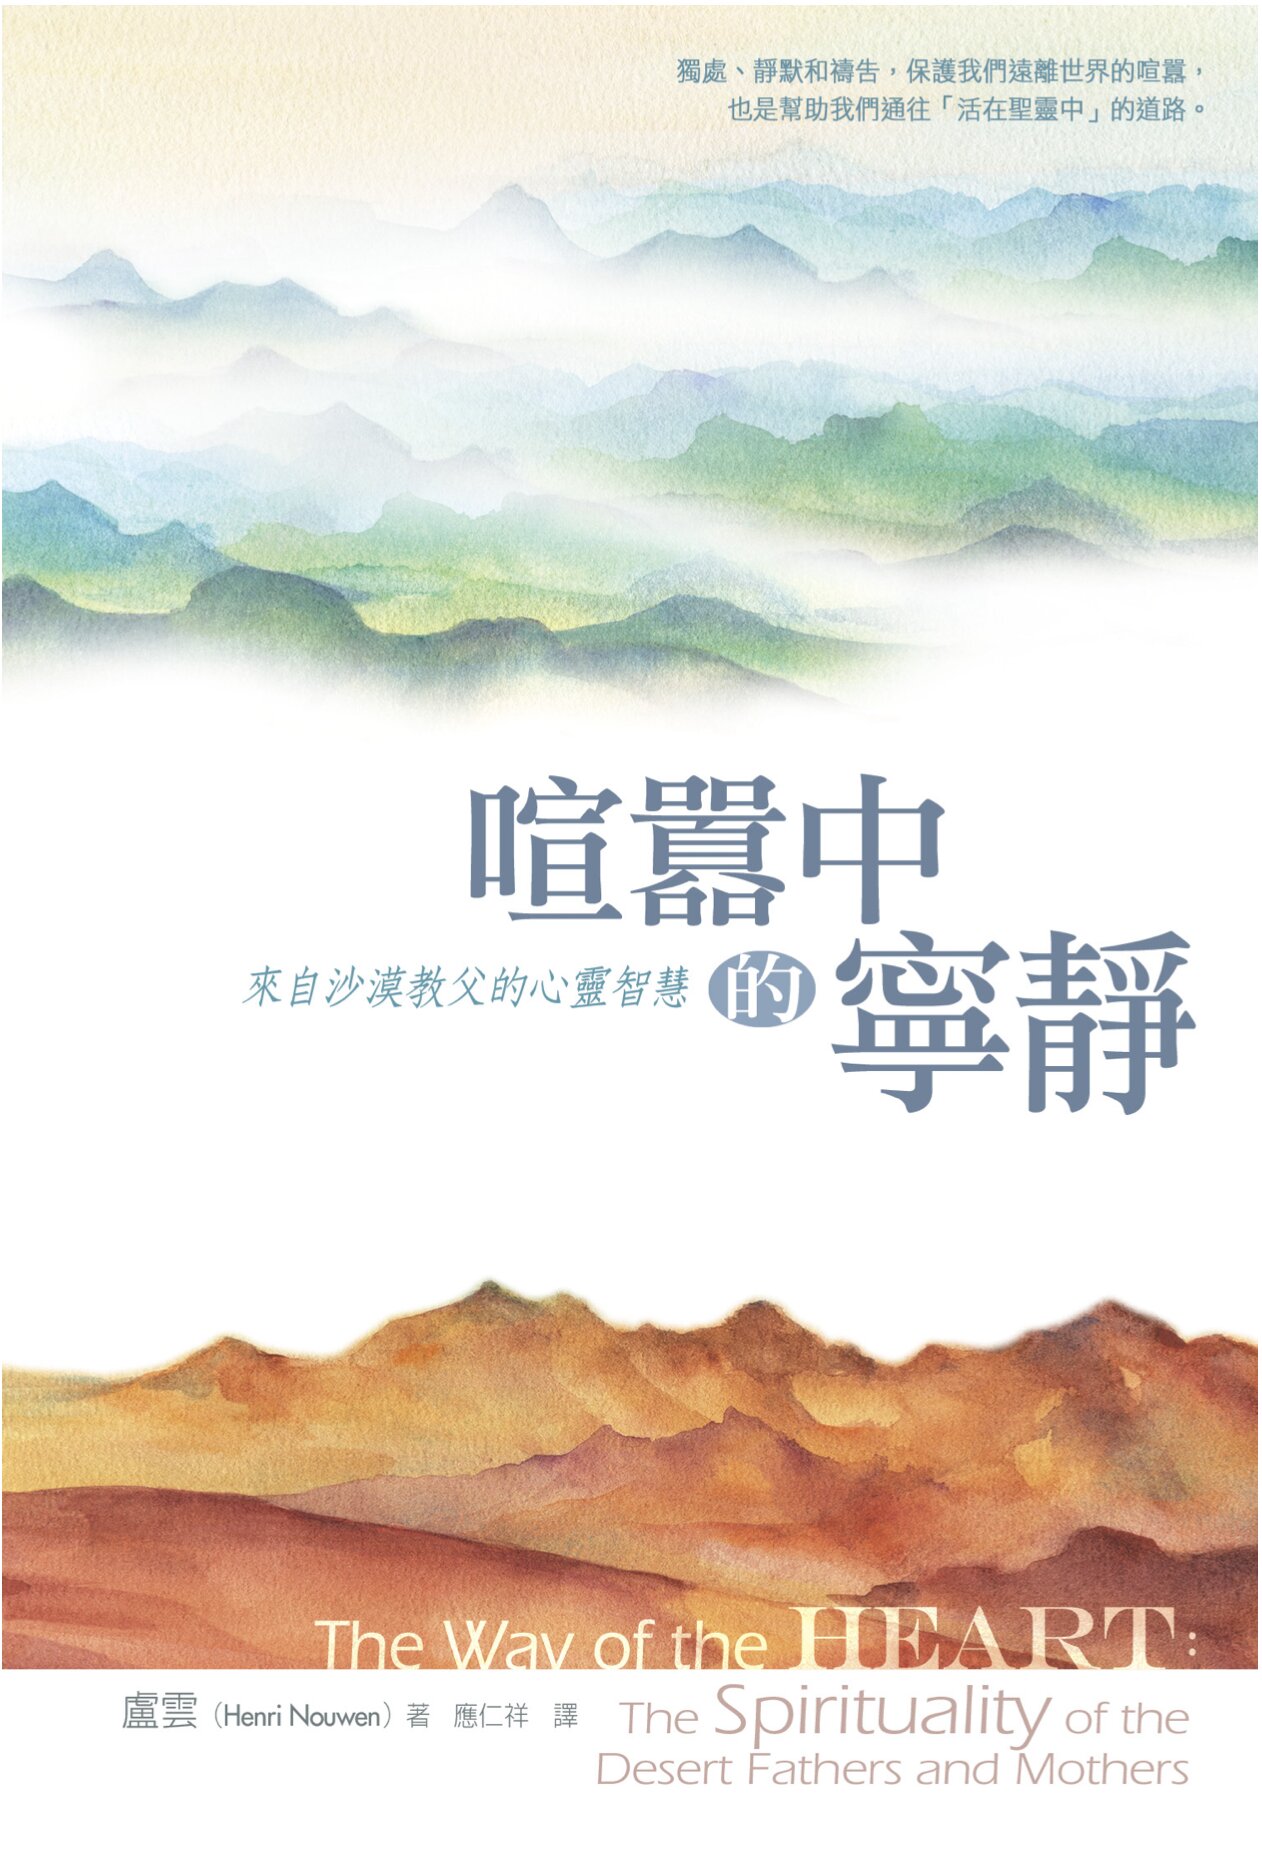 喧囂中的寧靜：來自沙漠教父的心靈智慧 (繁體) The way of the heart: the spirituality of the Desert Fathers and Mothers (Traditional Chinese)